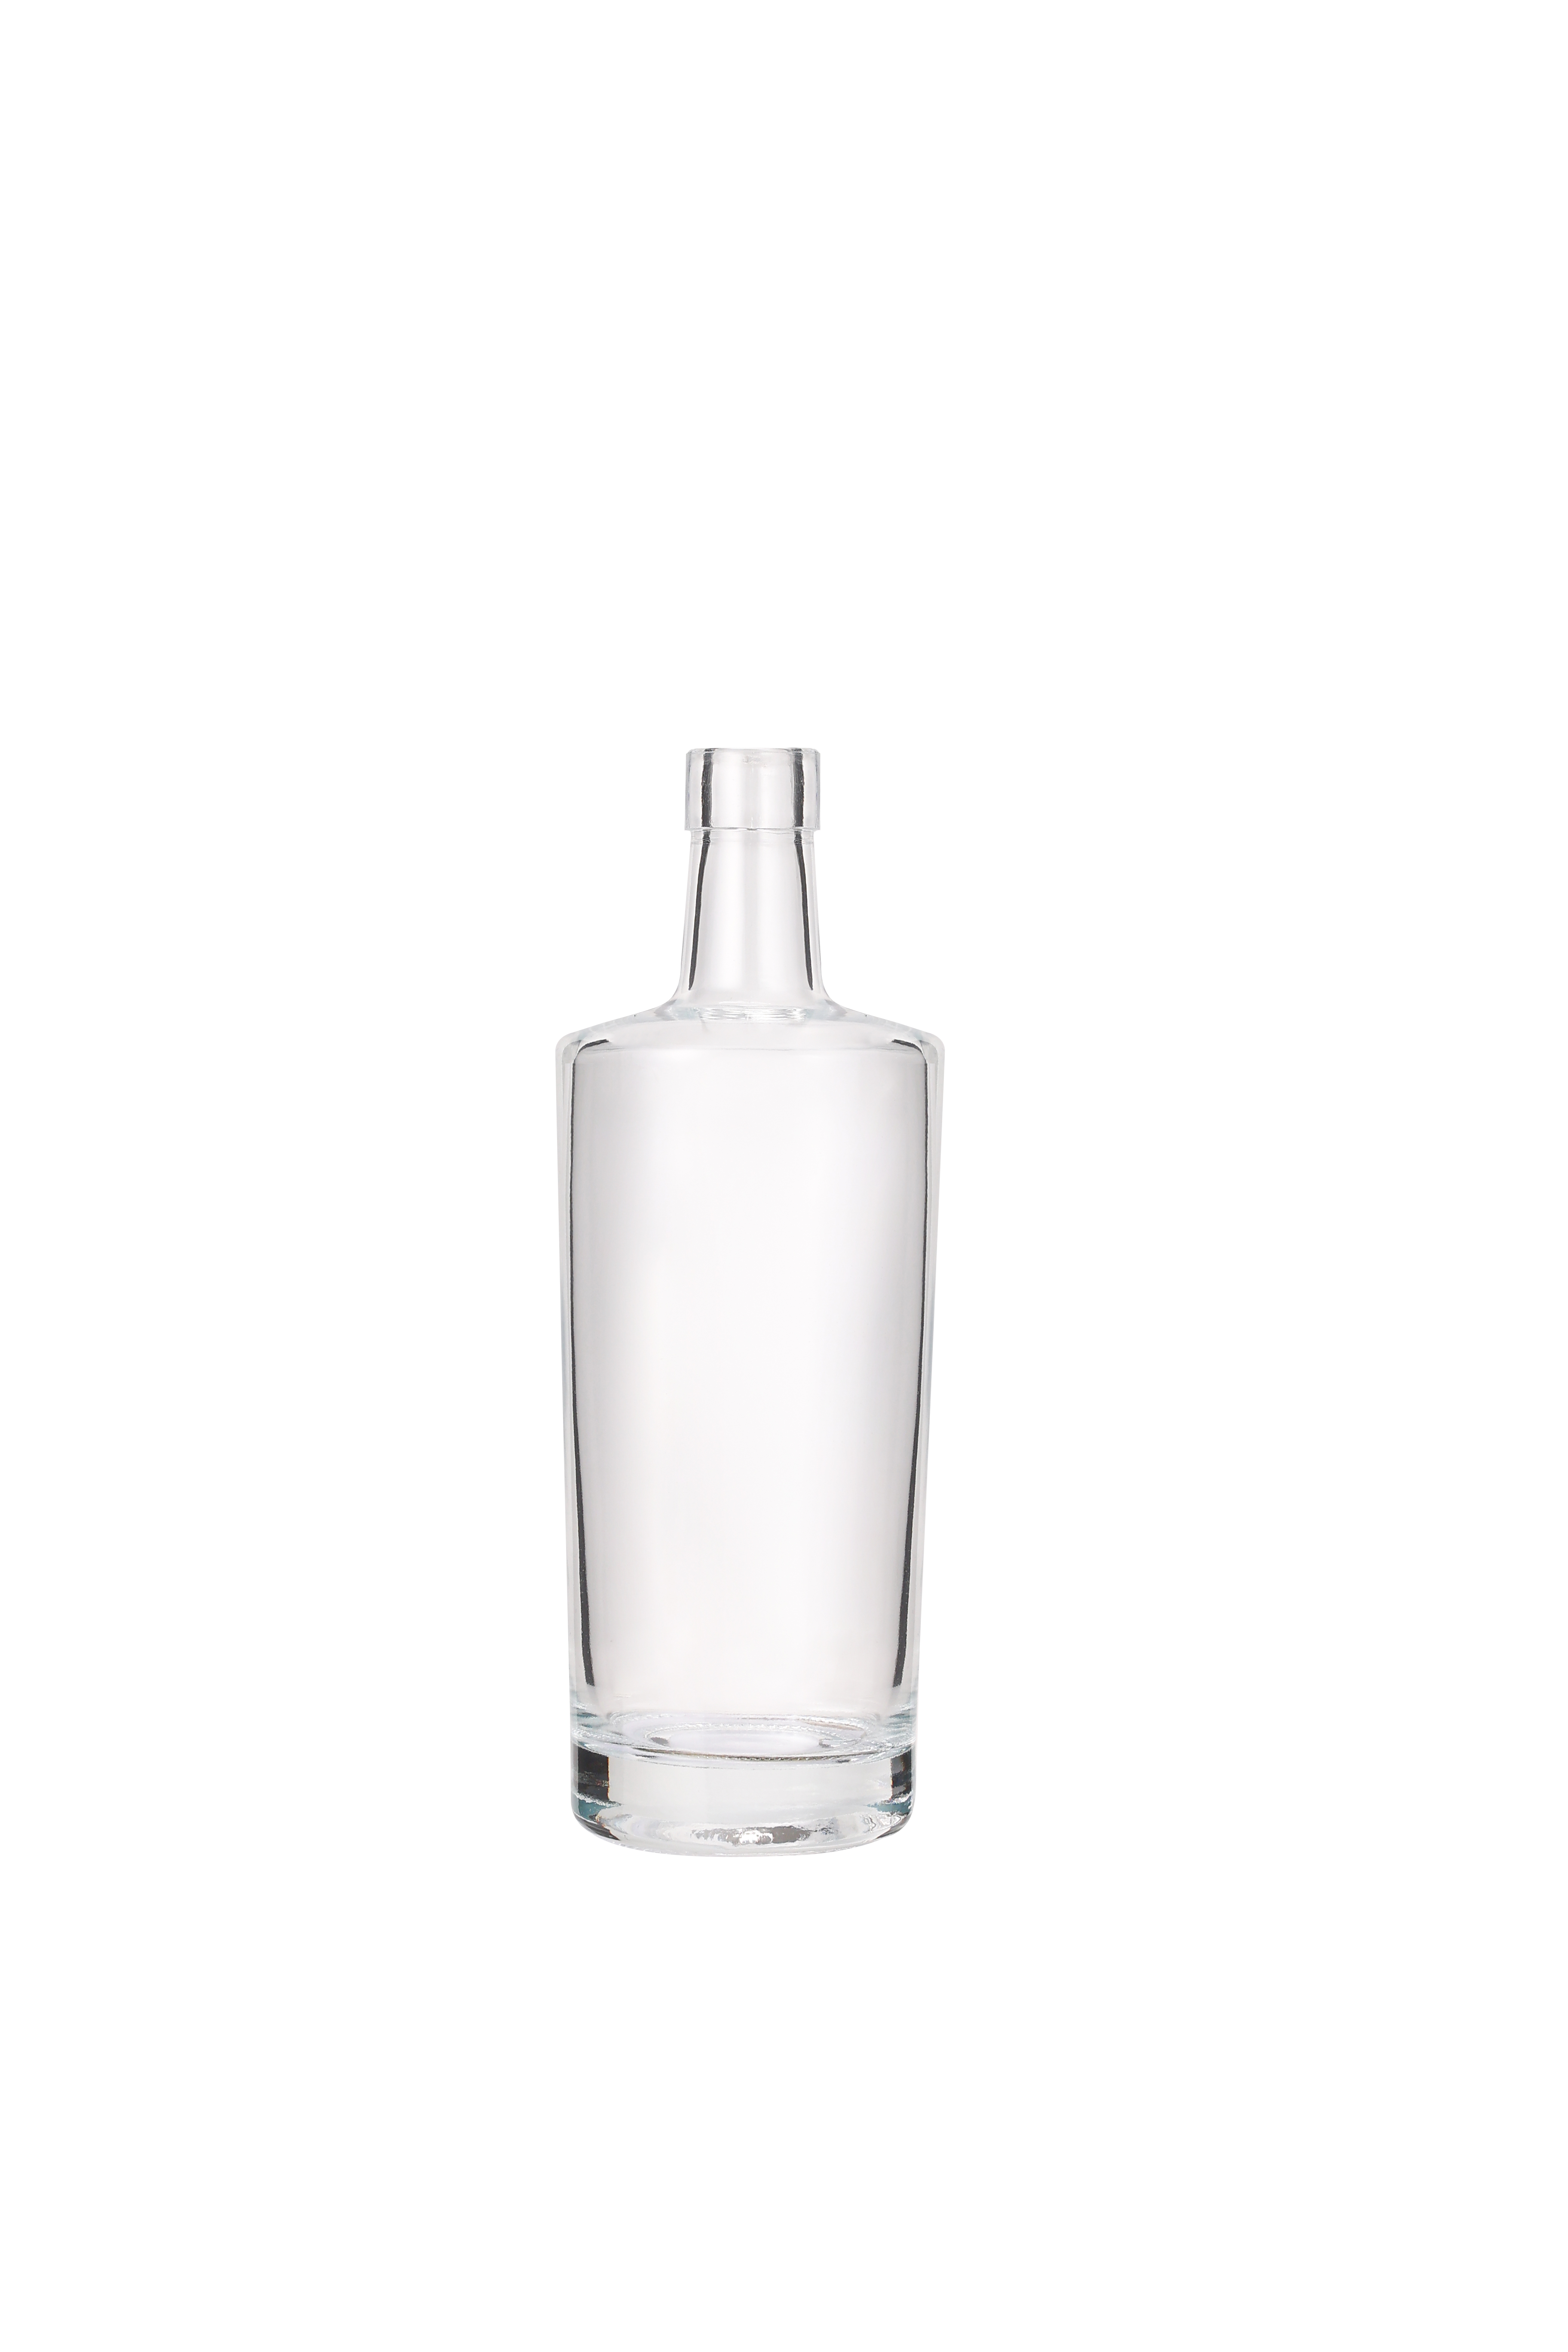 Glass Bottles Manufacture Custom 750ml Rum Vodka Liquor Glass Bottle